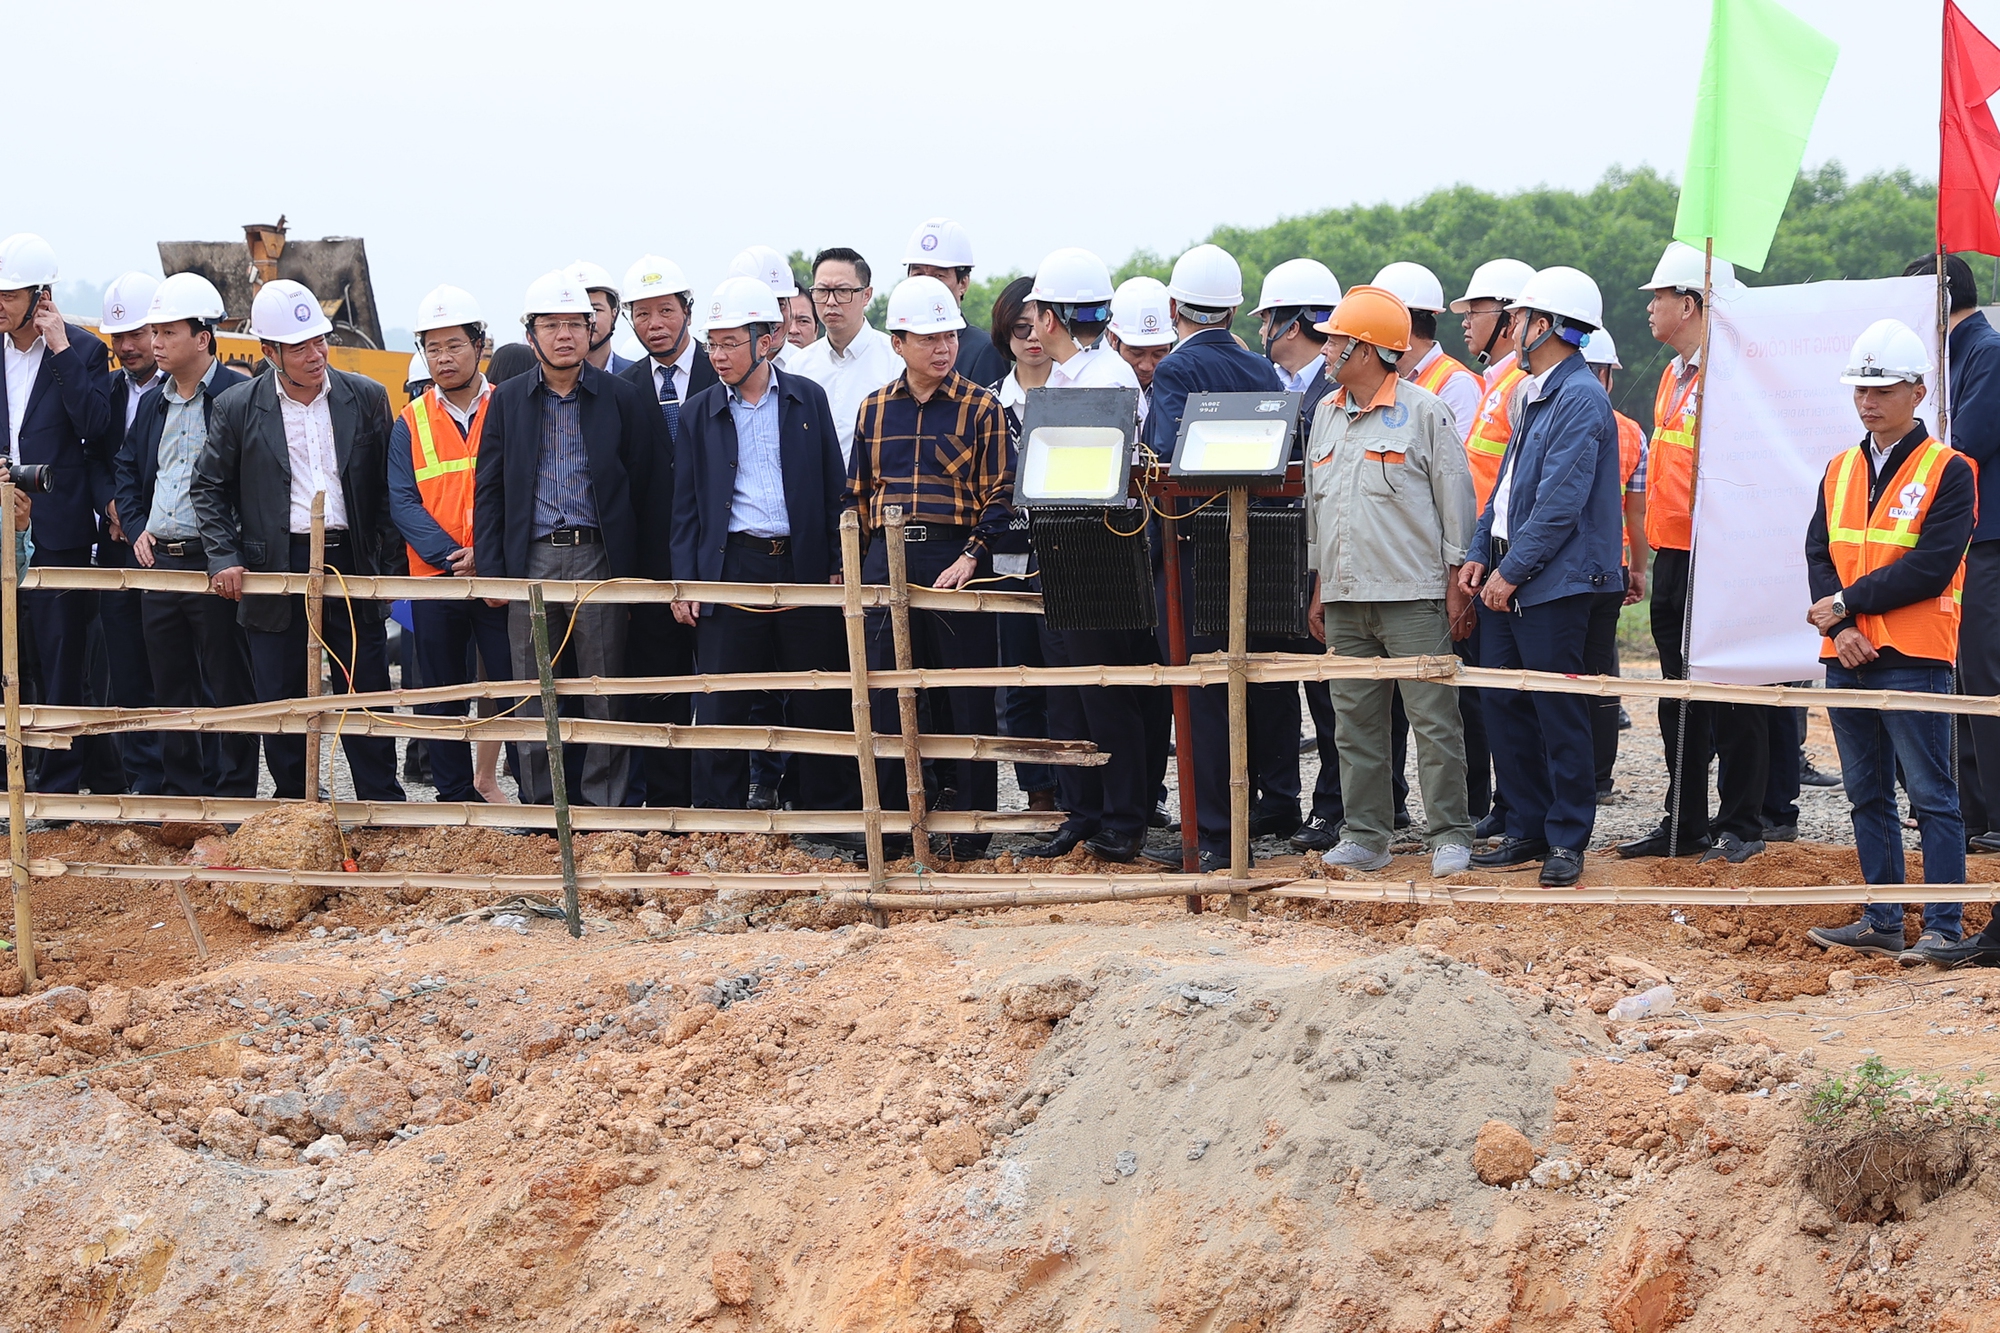 Phó Thủ tướng kiểm tra thực địa thi công dự án 500kV Quảng Trạch - Quỳnh Lưu - Ảnh: VGP/Nhật Bắc